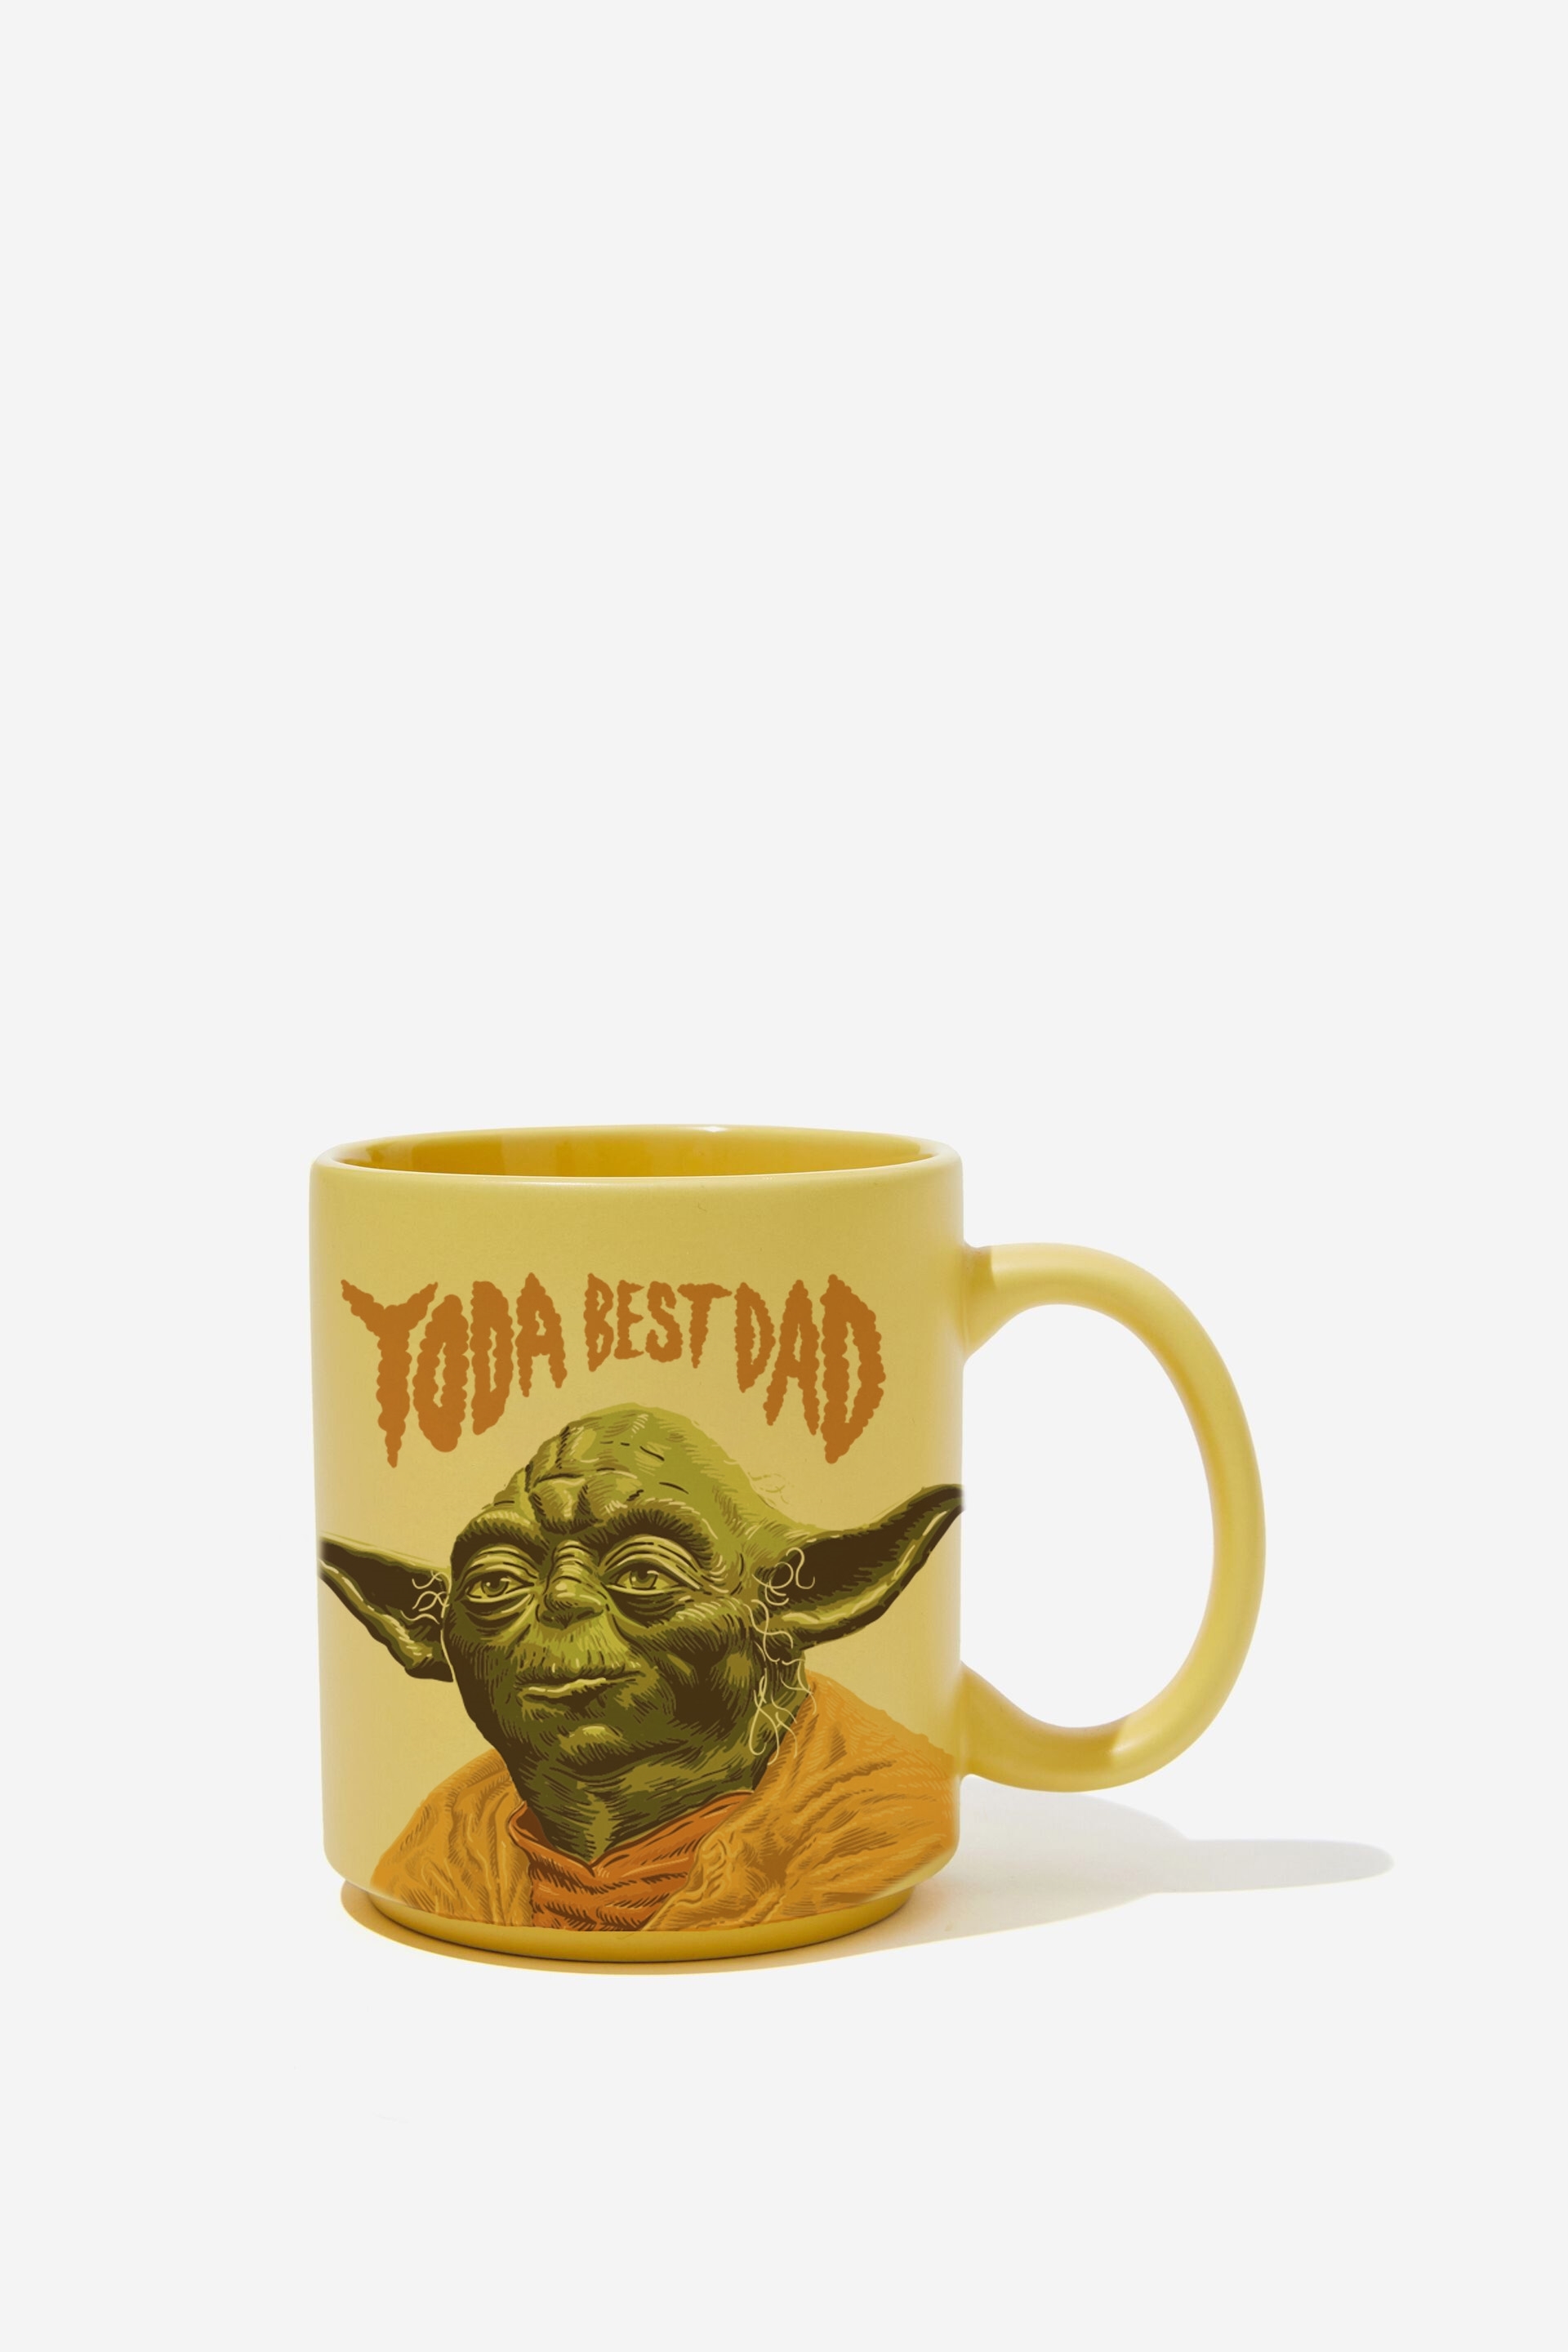 Typo - Star Wars Limited Edition Mug - Lcn luc yoda best dad